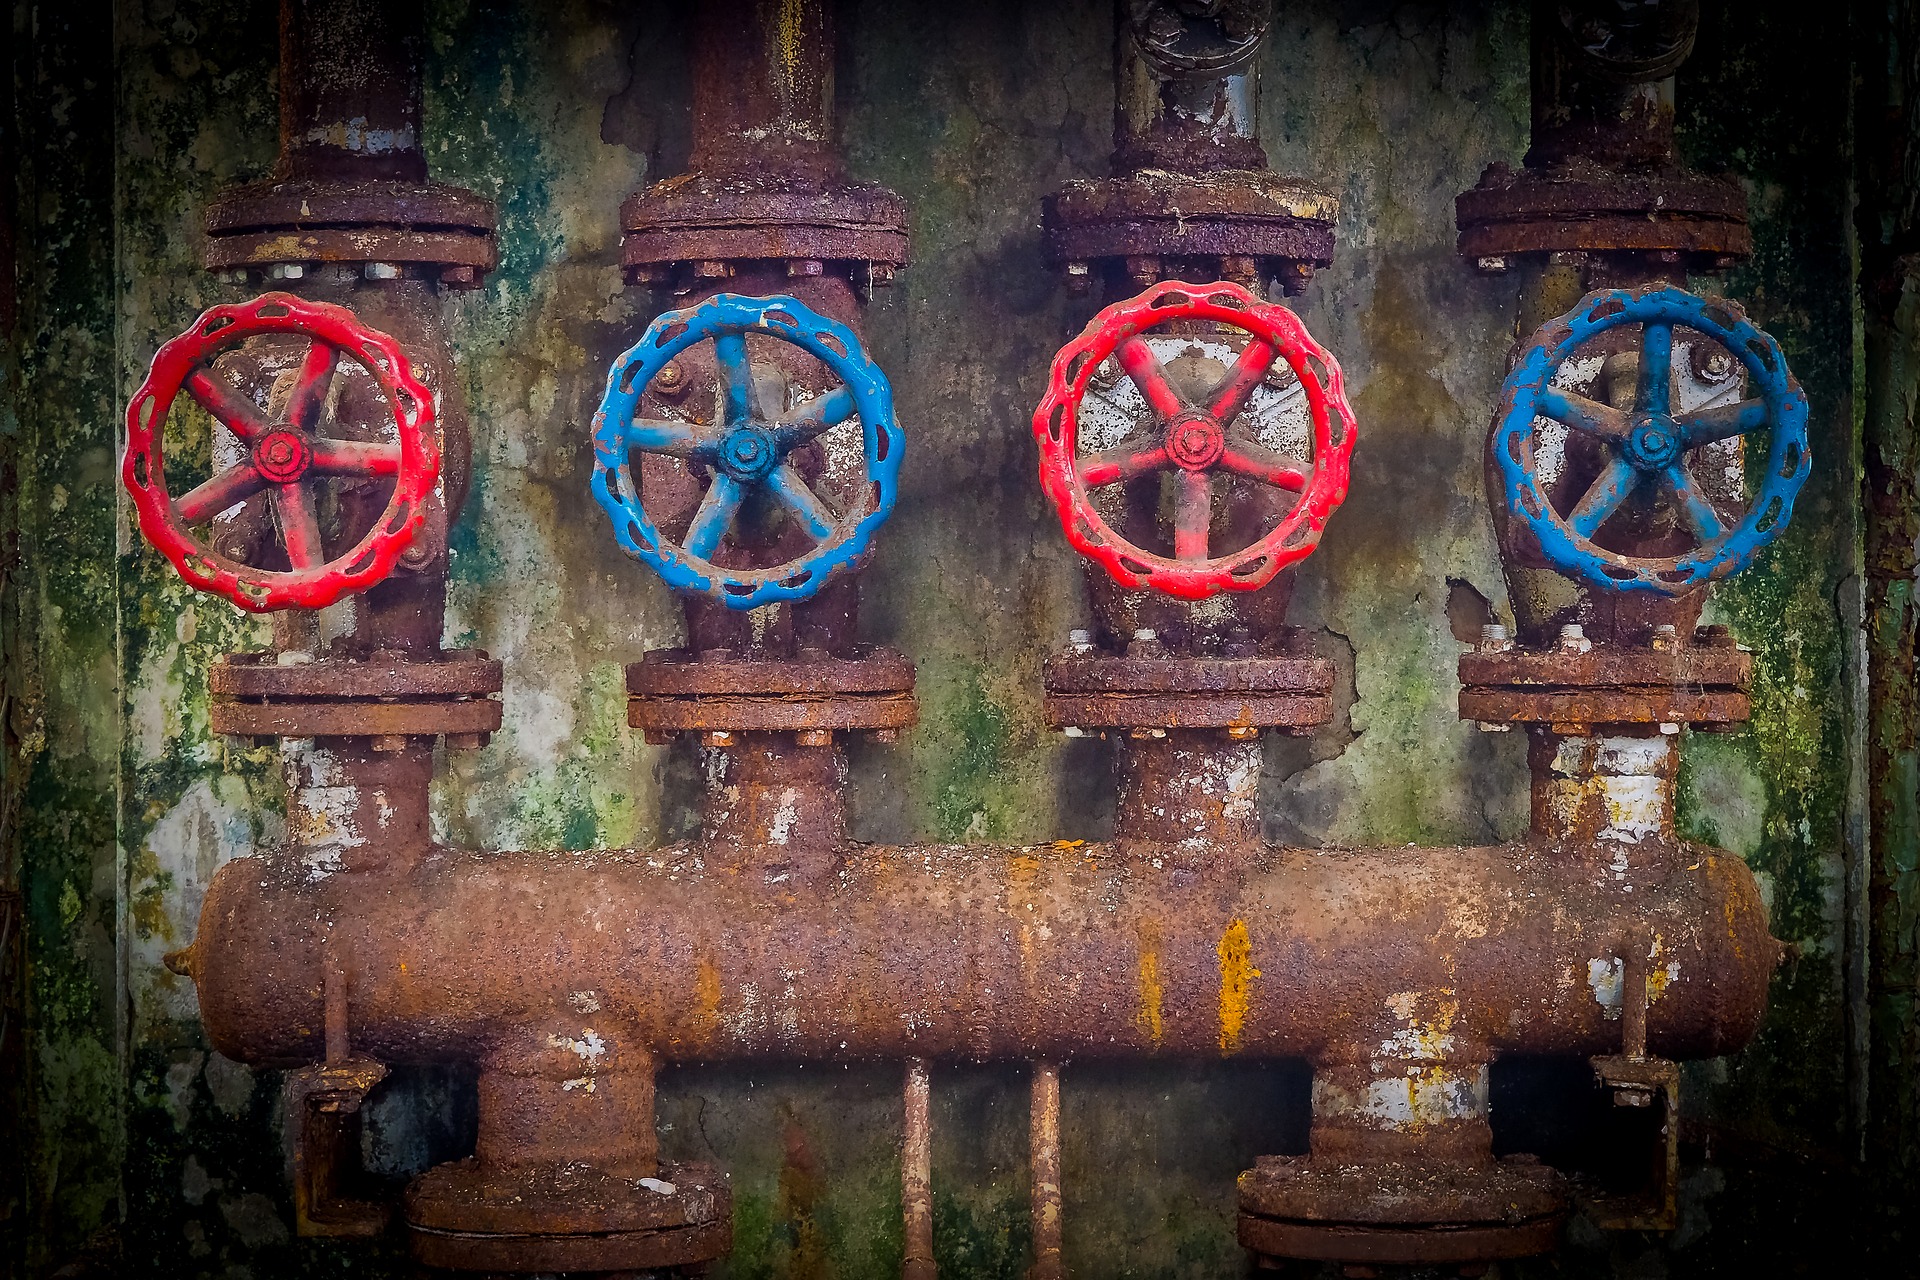 Ржавые турбы, трубопровод, водопровод, краны, вентили. Иллюстративное фото pixabay.com